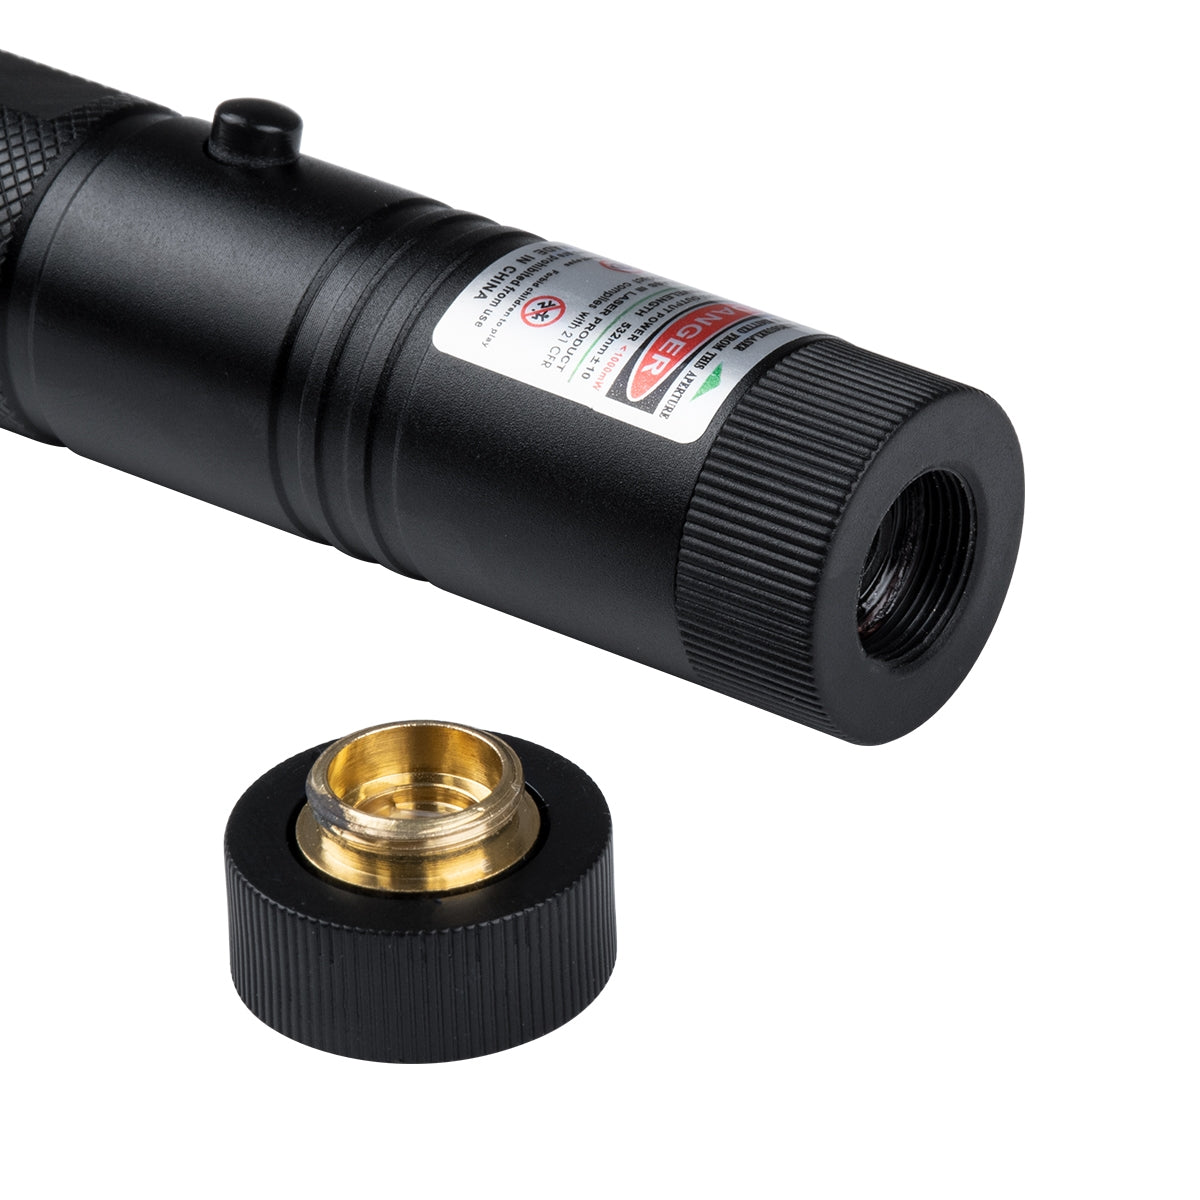 Φορητό Επαναφορτιζόμενο Laser Pointer 5Mw Class 3 DOT Zoom με Extra Κεφαλή για Dot Effects με Μπαταρία 18650 Li-ion 4800mAh